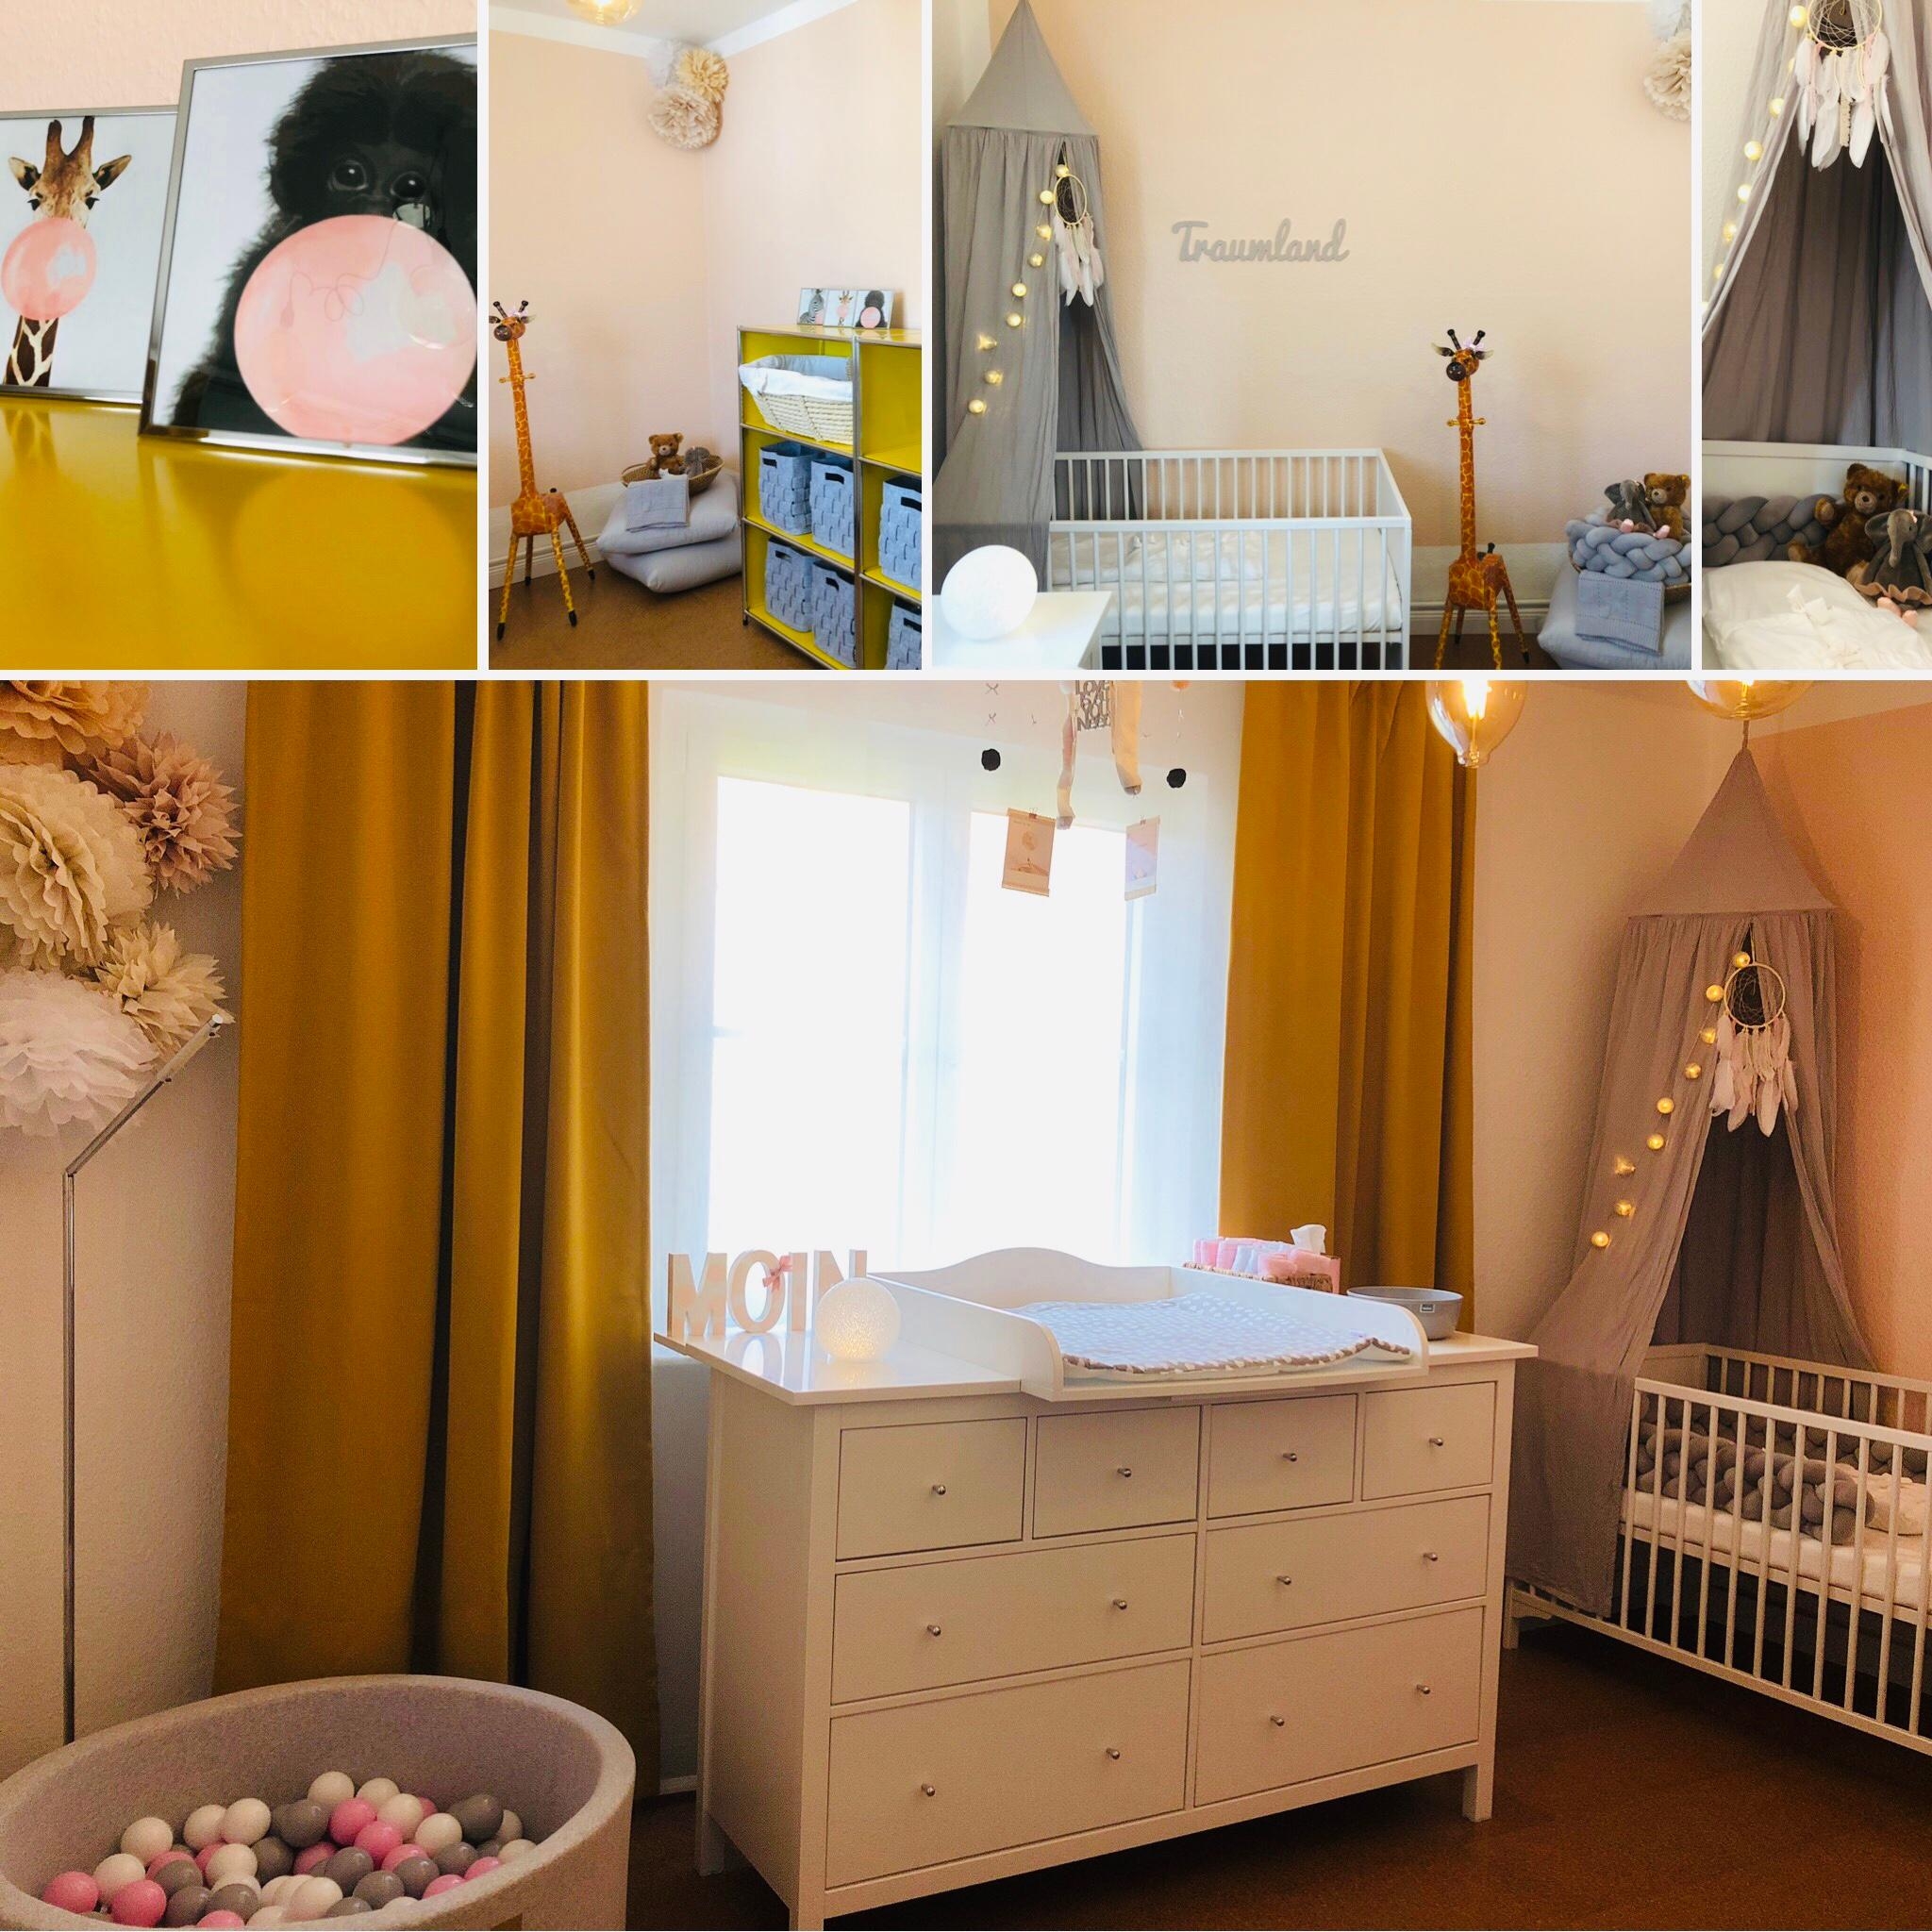 Wir können es kaum erwarten dich in deinem #babyzimmer zu empfangen kleines Wunder!#livingchallenge#COUCHMagazin